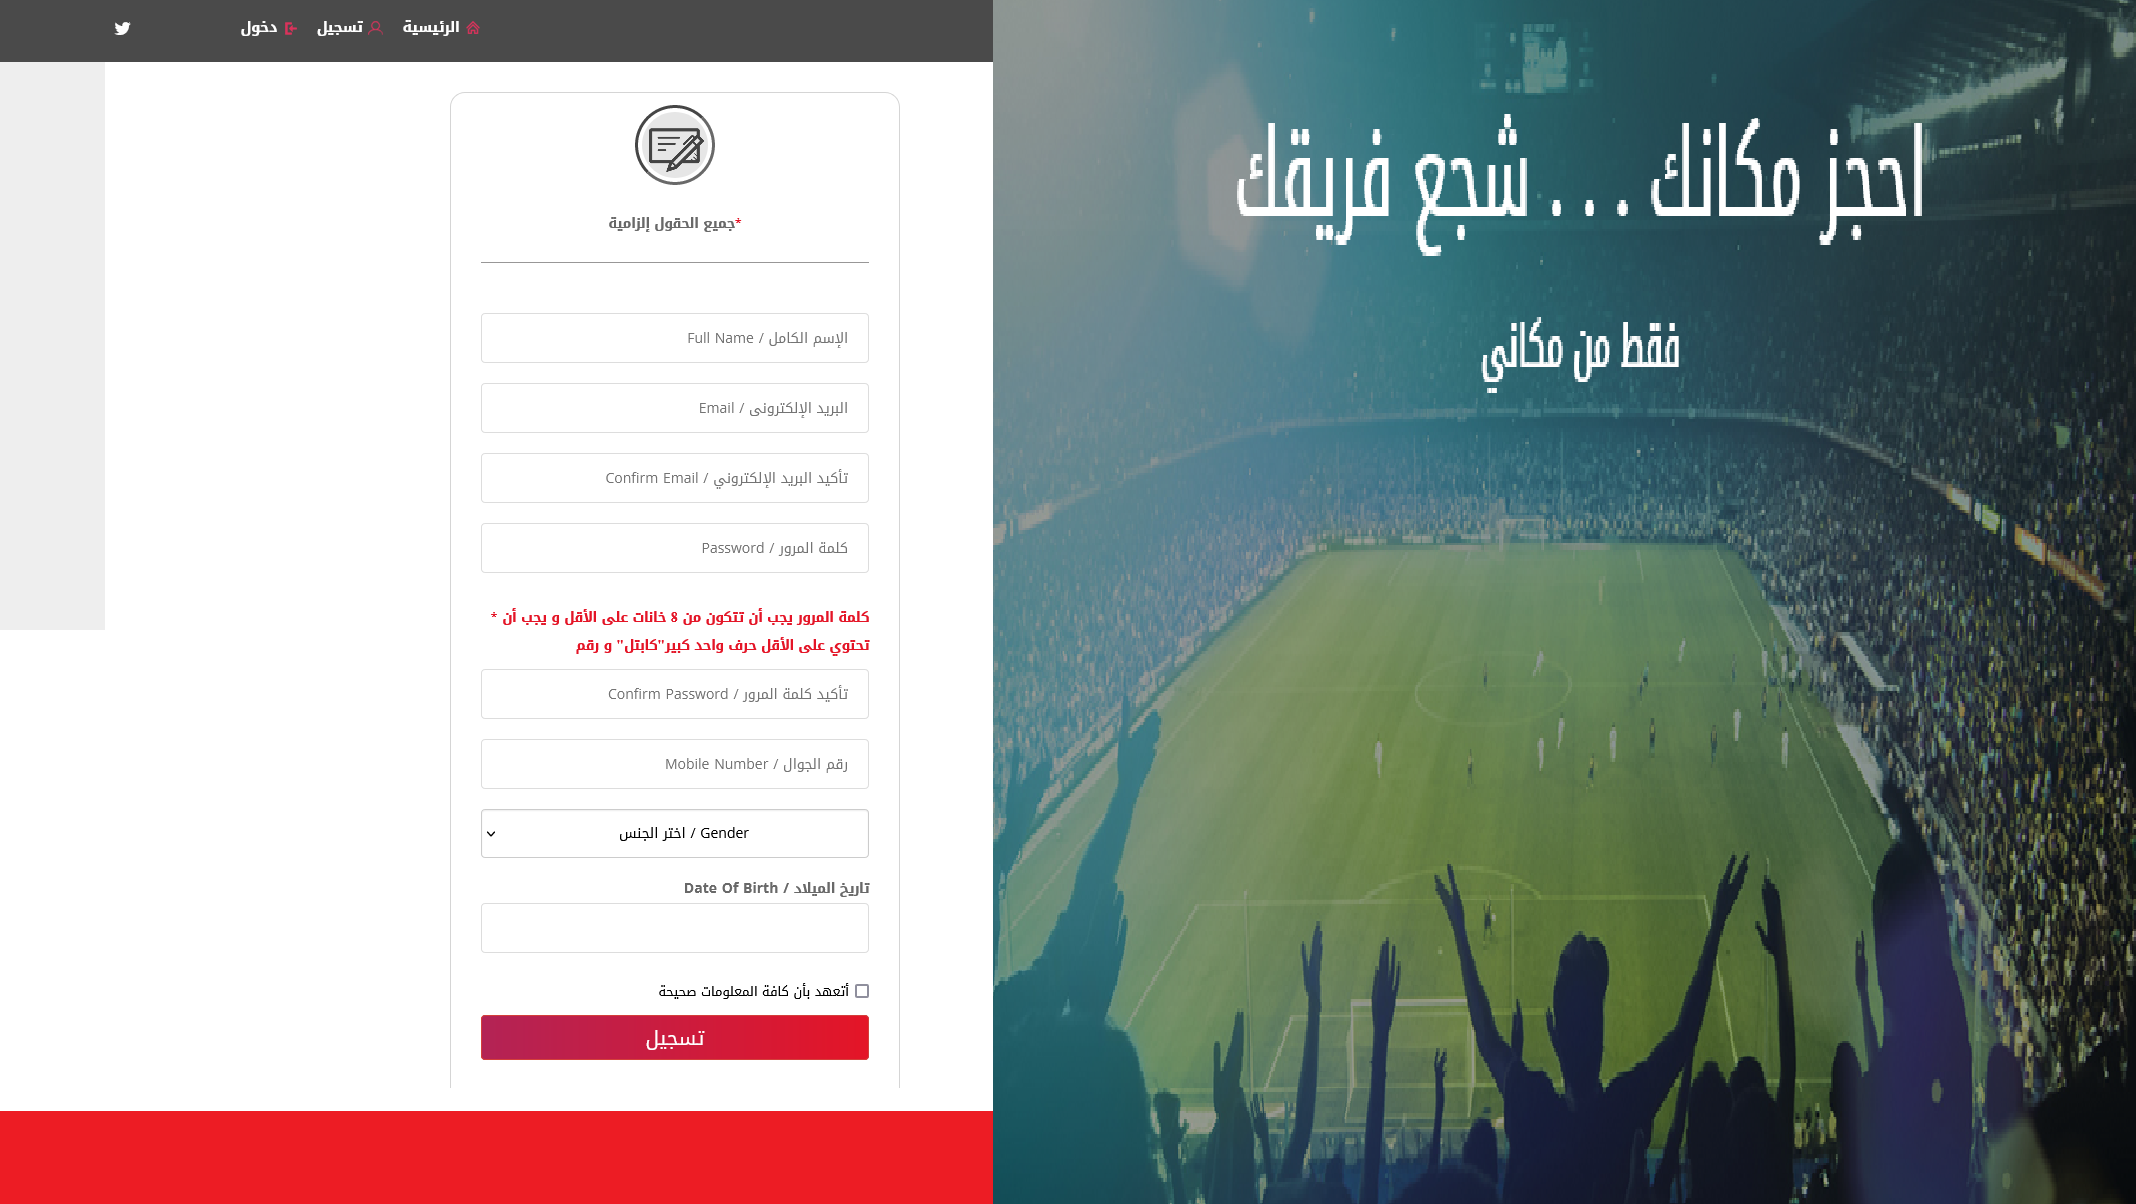 شراء تذاكر مباريات السعودية على مكاني لبيع تذاكر مباراة التعاون والطائي موعد المباراة والقنوات الناقلة